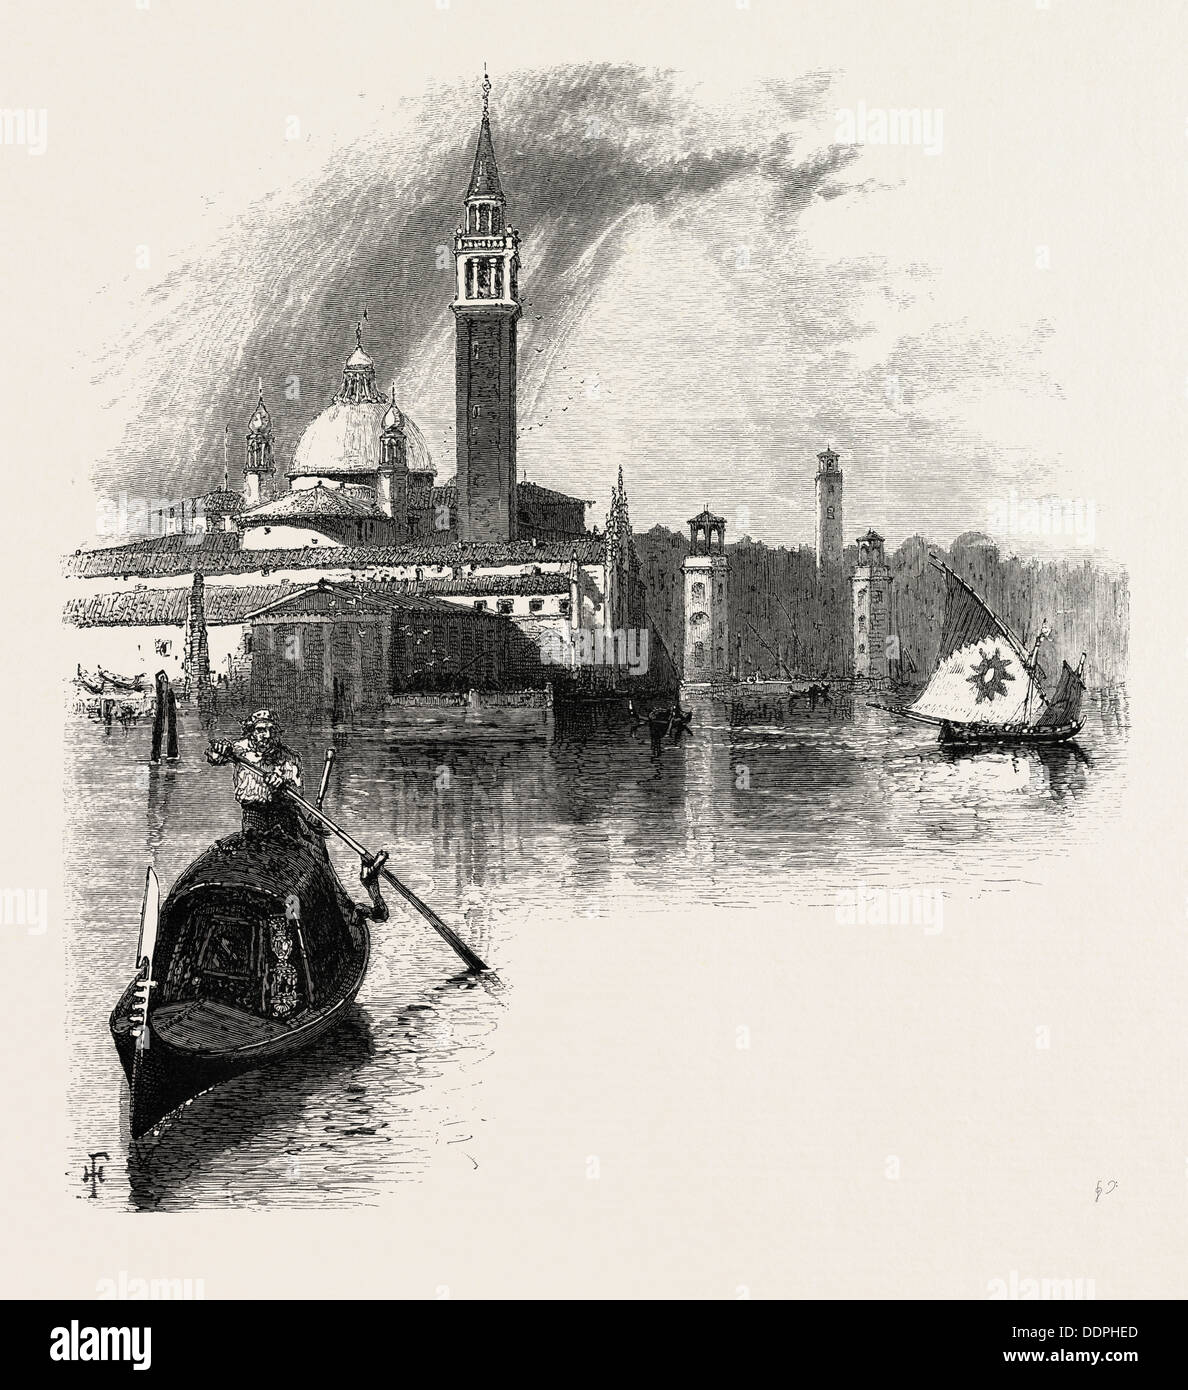 Venedig, Italien, 19. Jahrhundert Gravur Stockfotografie - Alamy